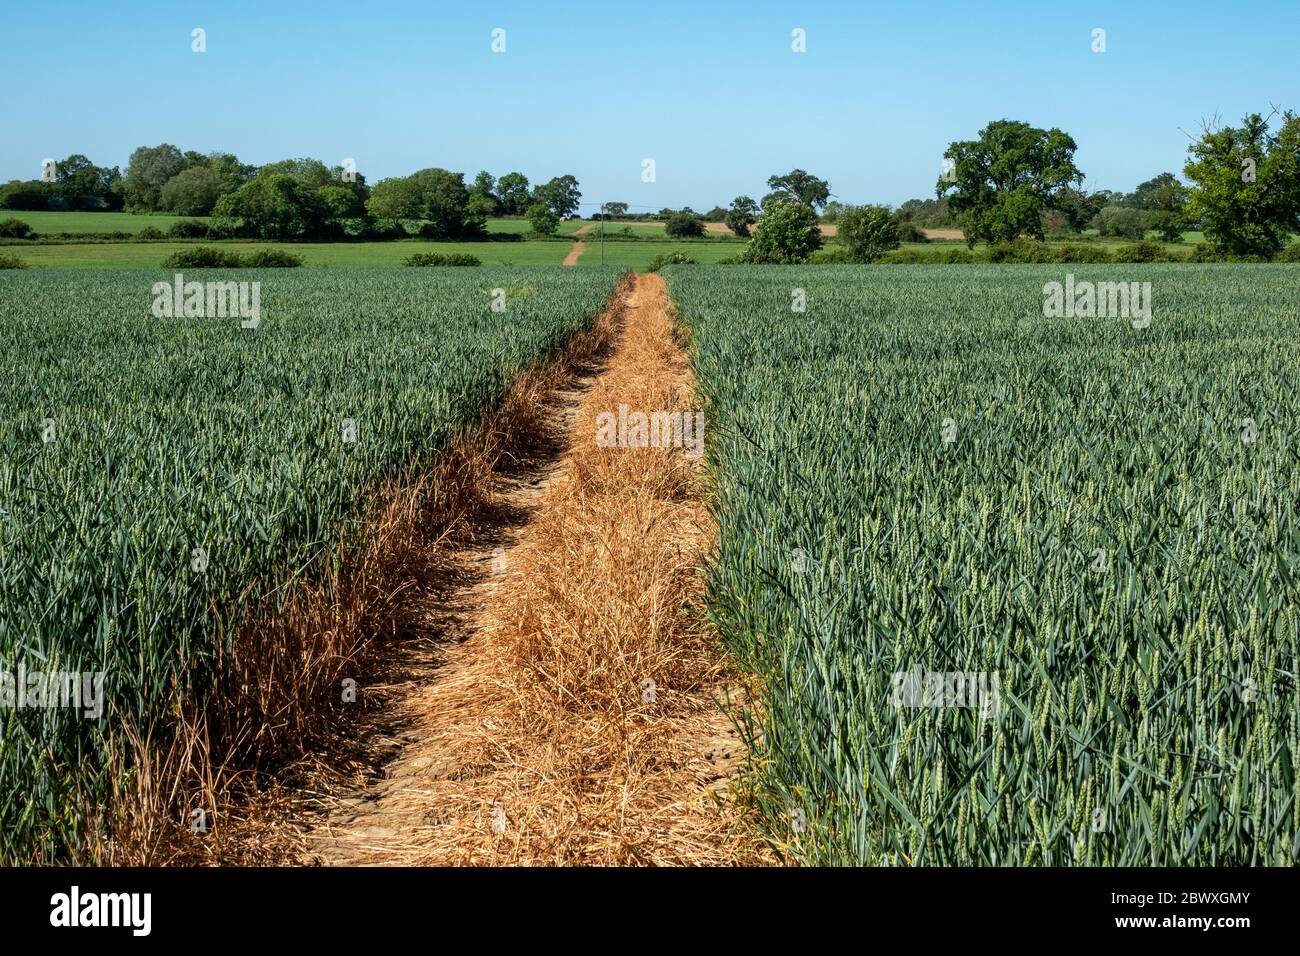 Un percorso tagliato chiaro attraverso un campo di grano immaturo che divide il campo in due metà e forma un punto di fuga sull'orizzonte alberato fiancheggiato Foto Stock